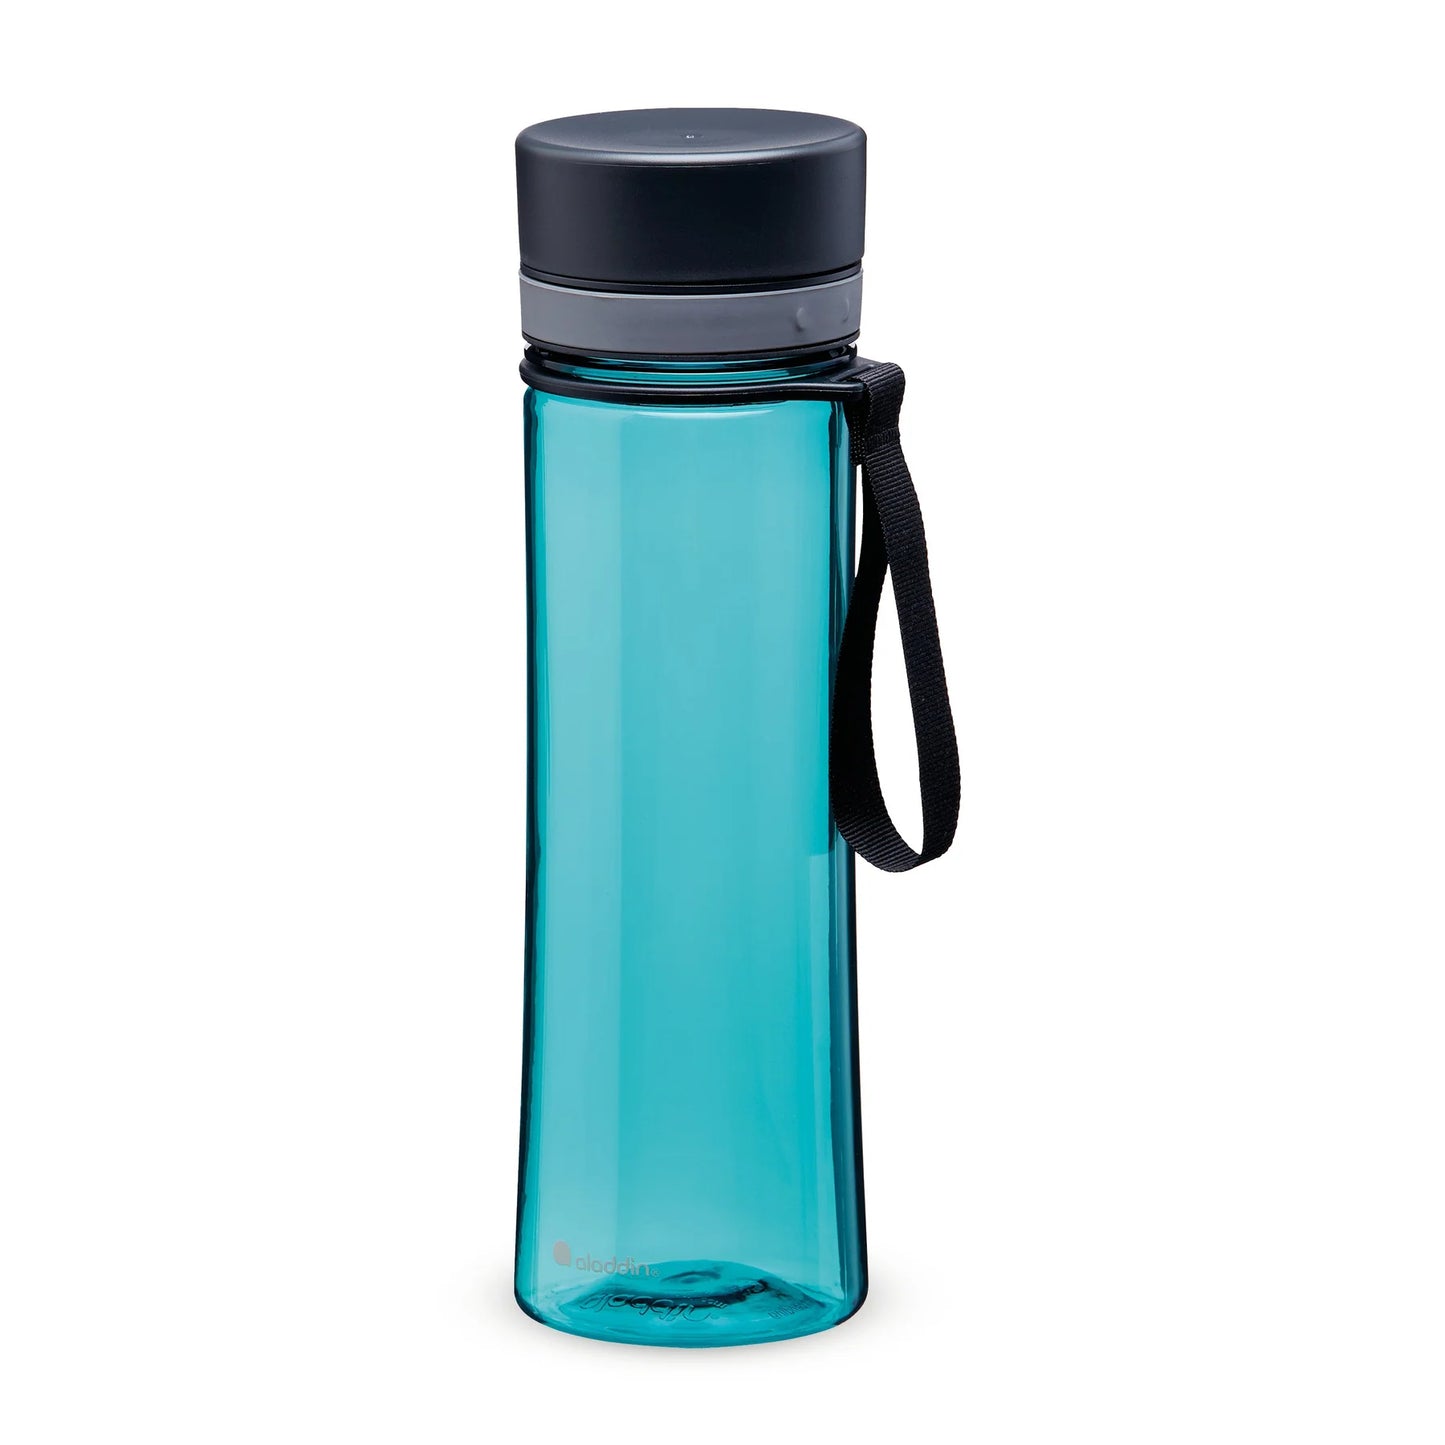 Aladdin Aveo Water Bottle 0.6L